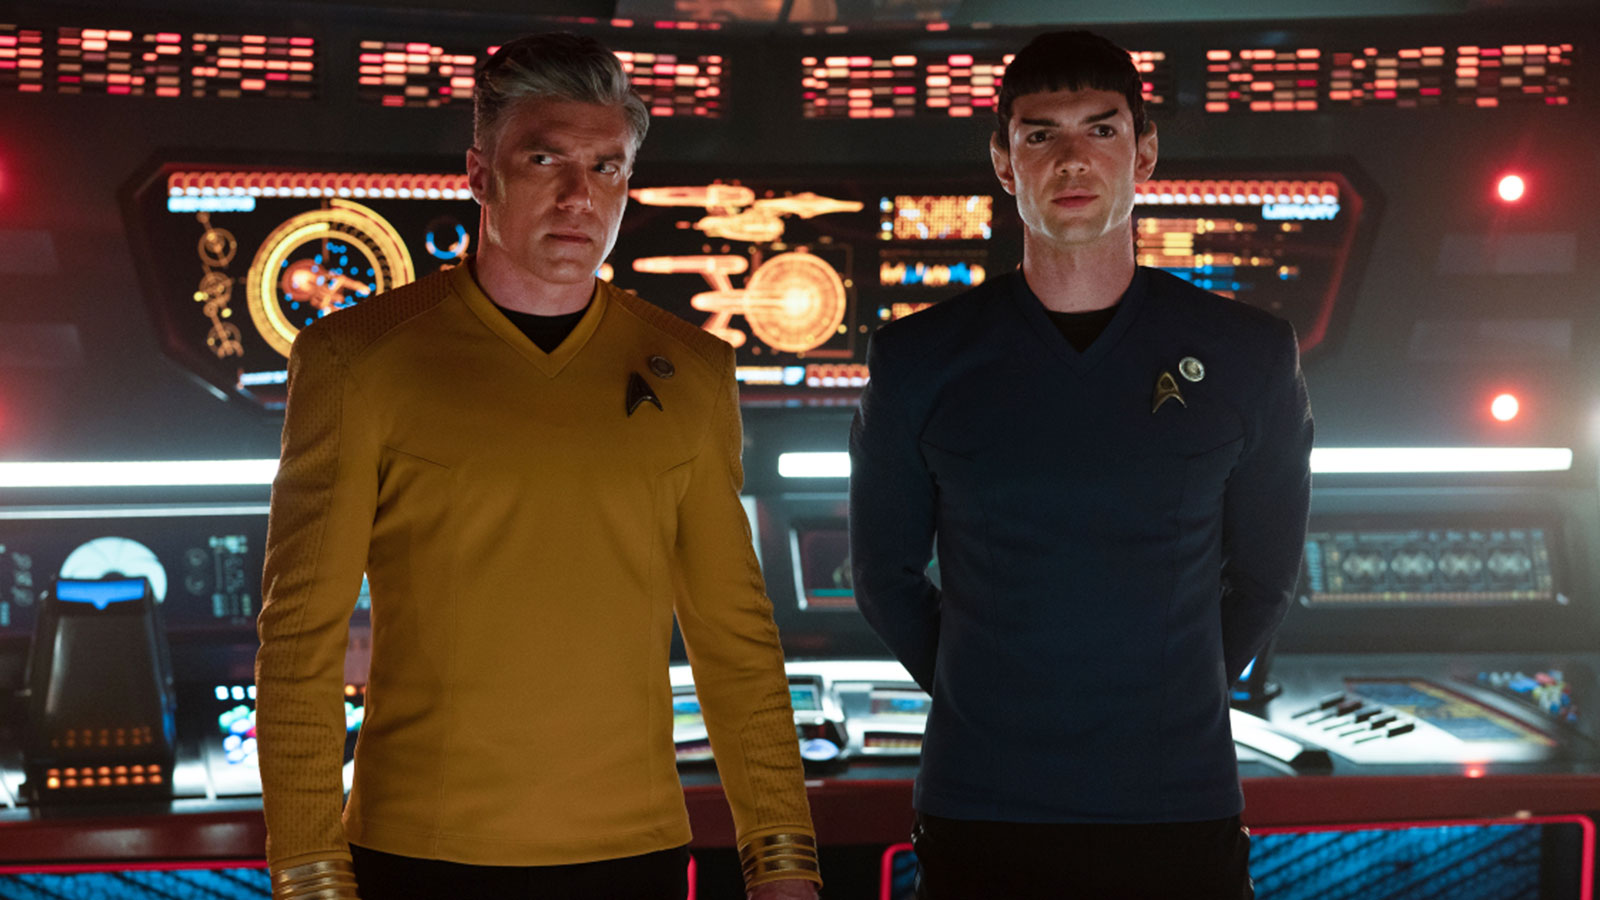 Star Trek: Strange New Worlds Episode 4 "Memento Mori" trailer + new photos